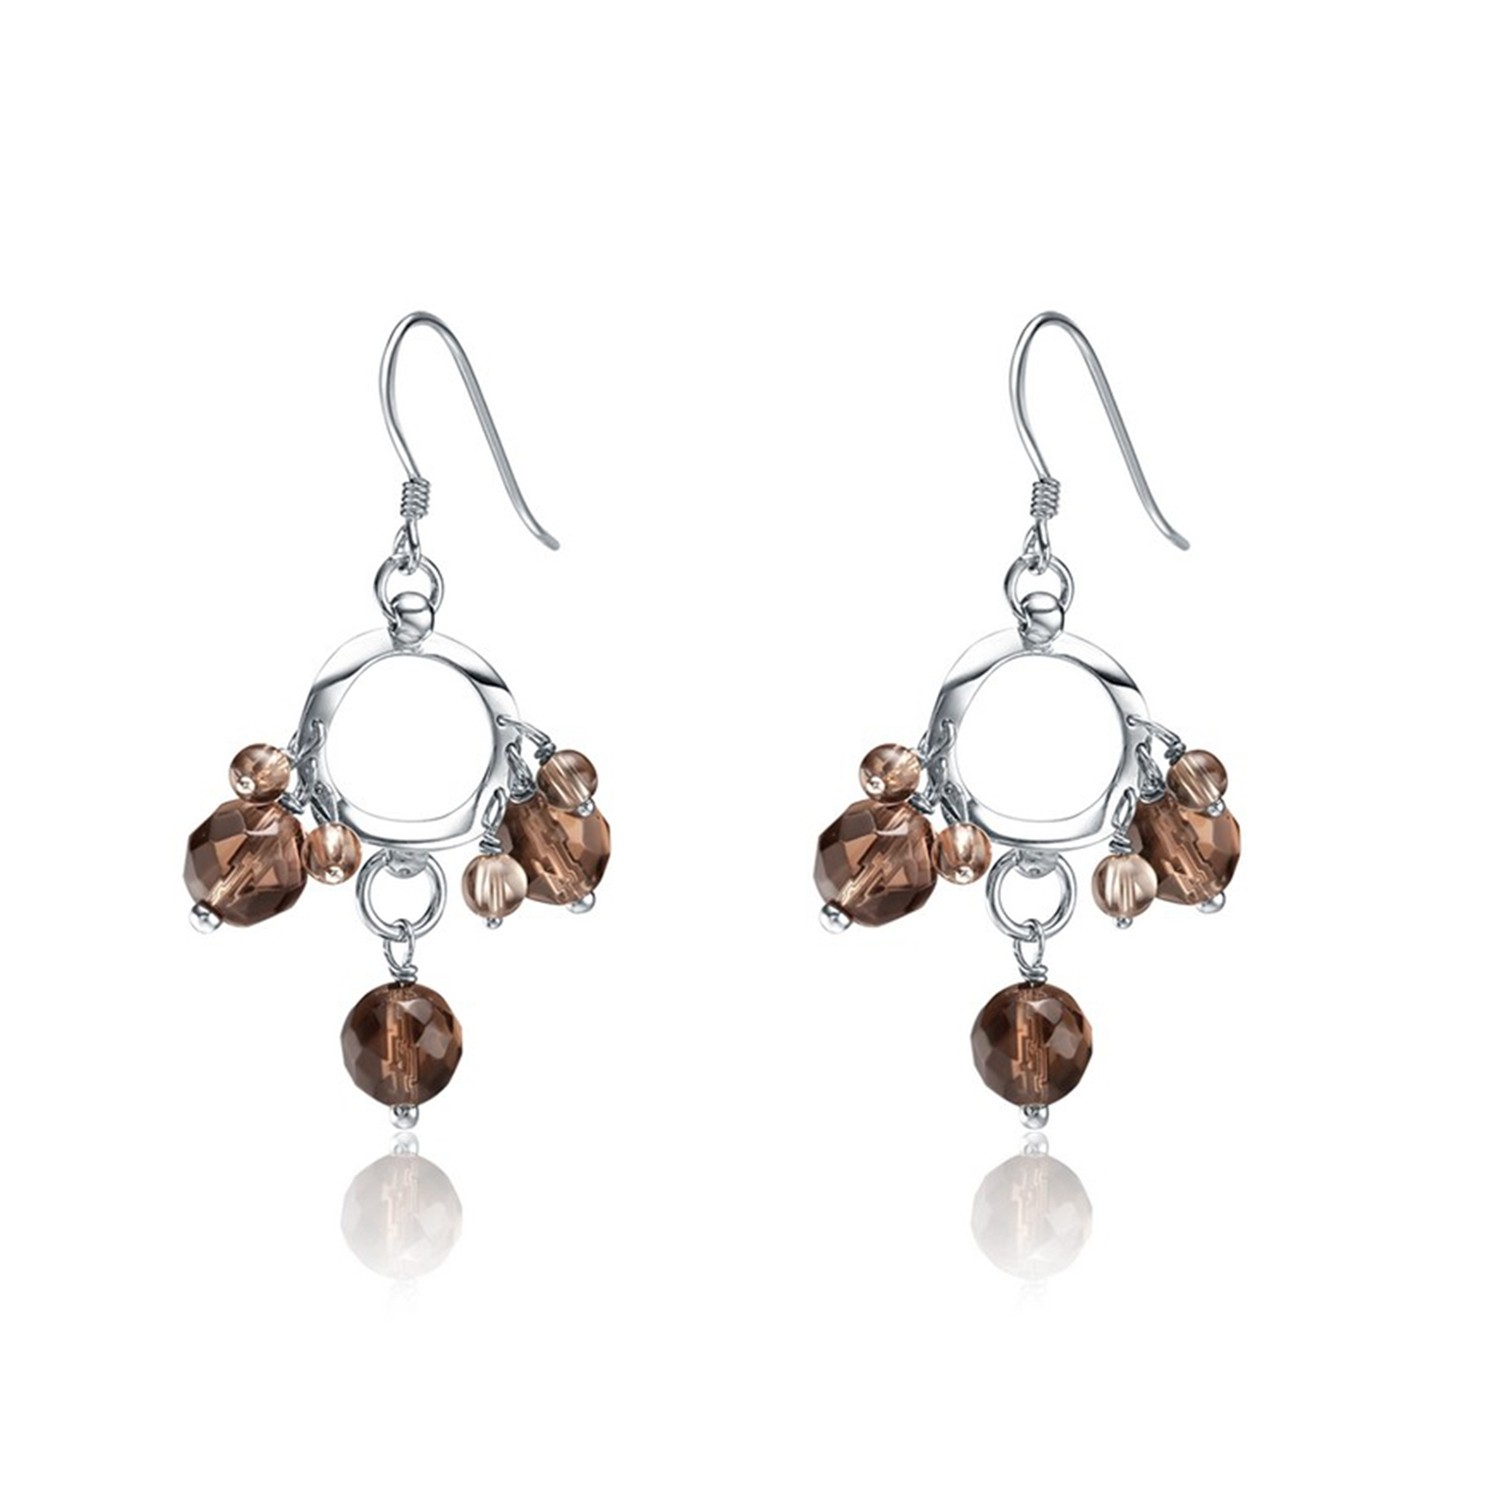 Jewelry Manfacturer sterling silver hook earring glass pendant women jewelry drop earring